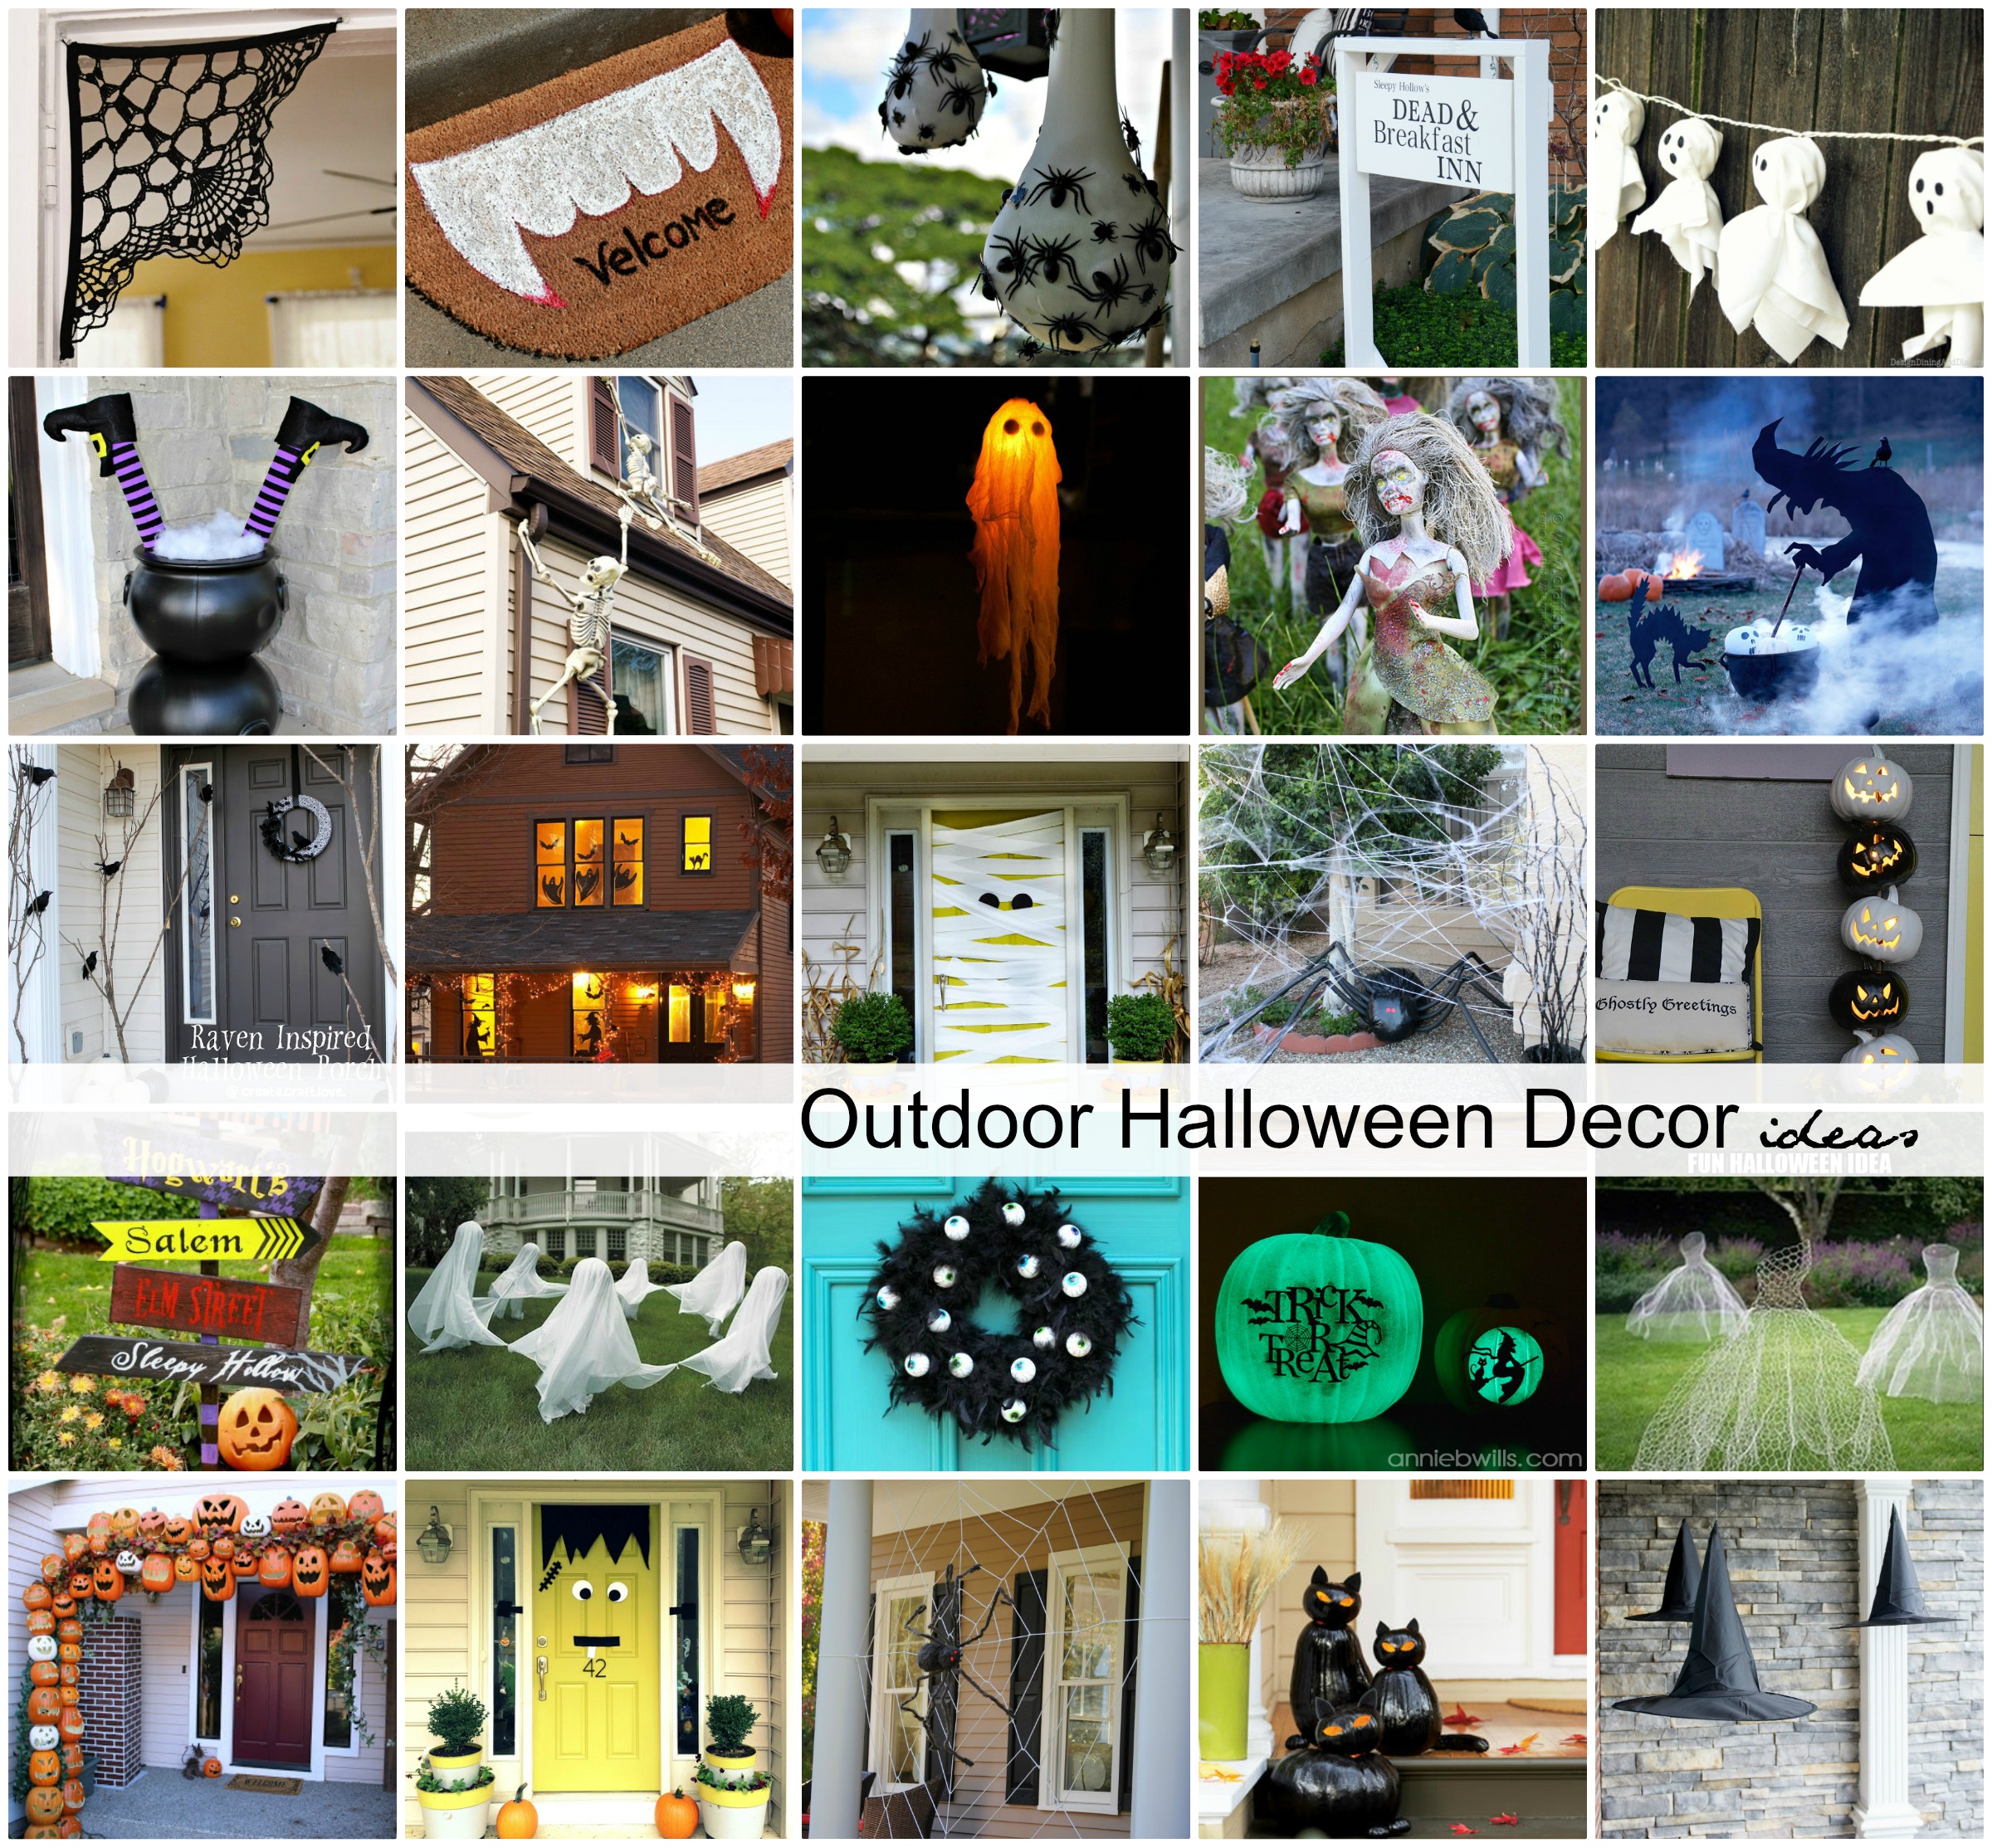 DIY-Halloween-Decor-Outdoor-Ideas